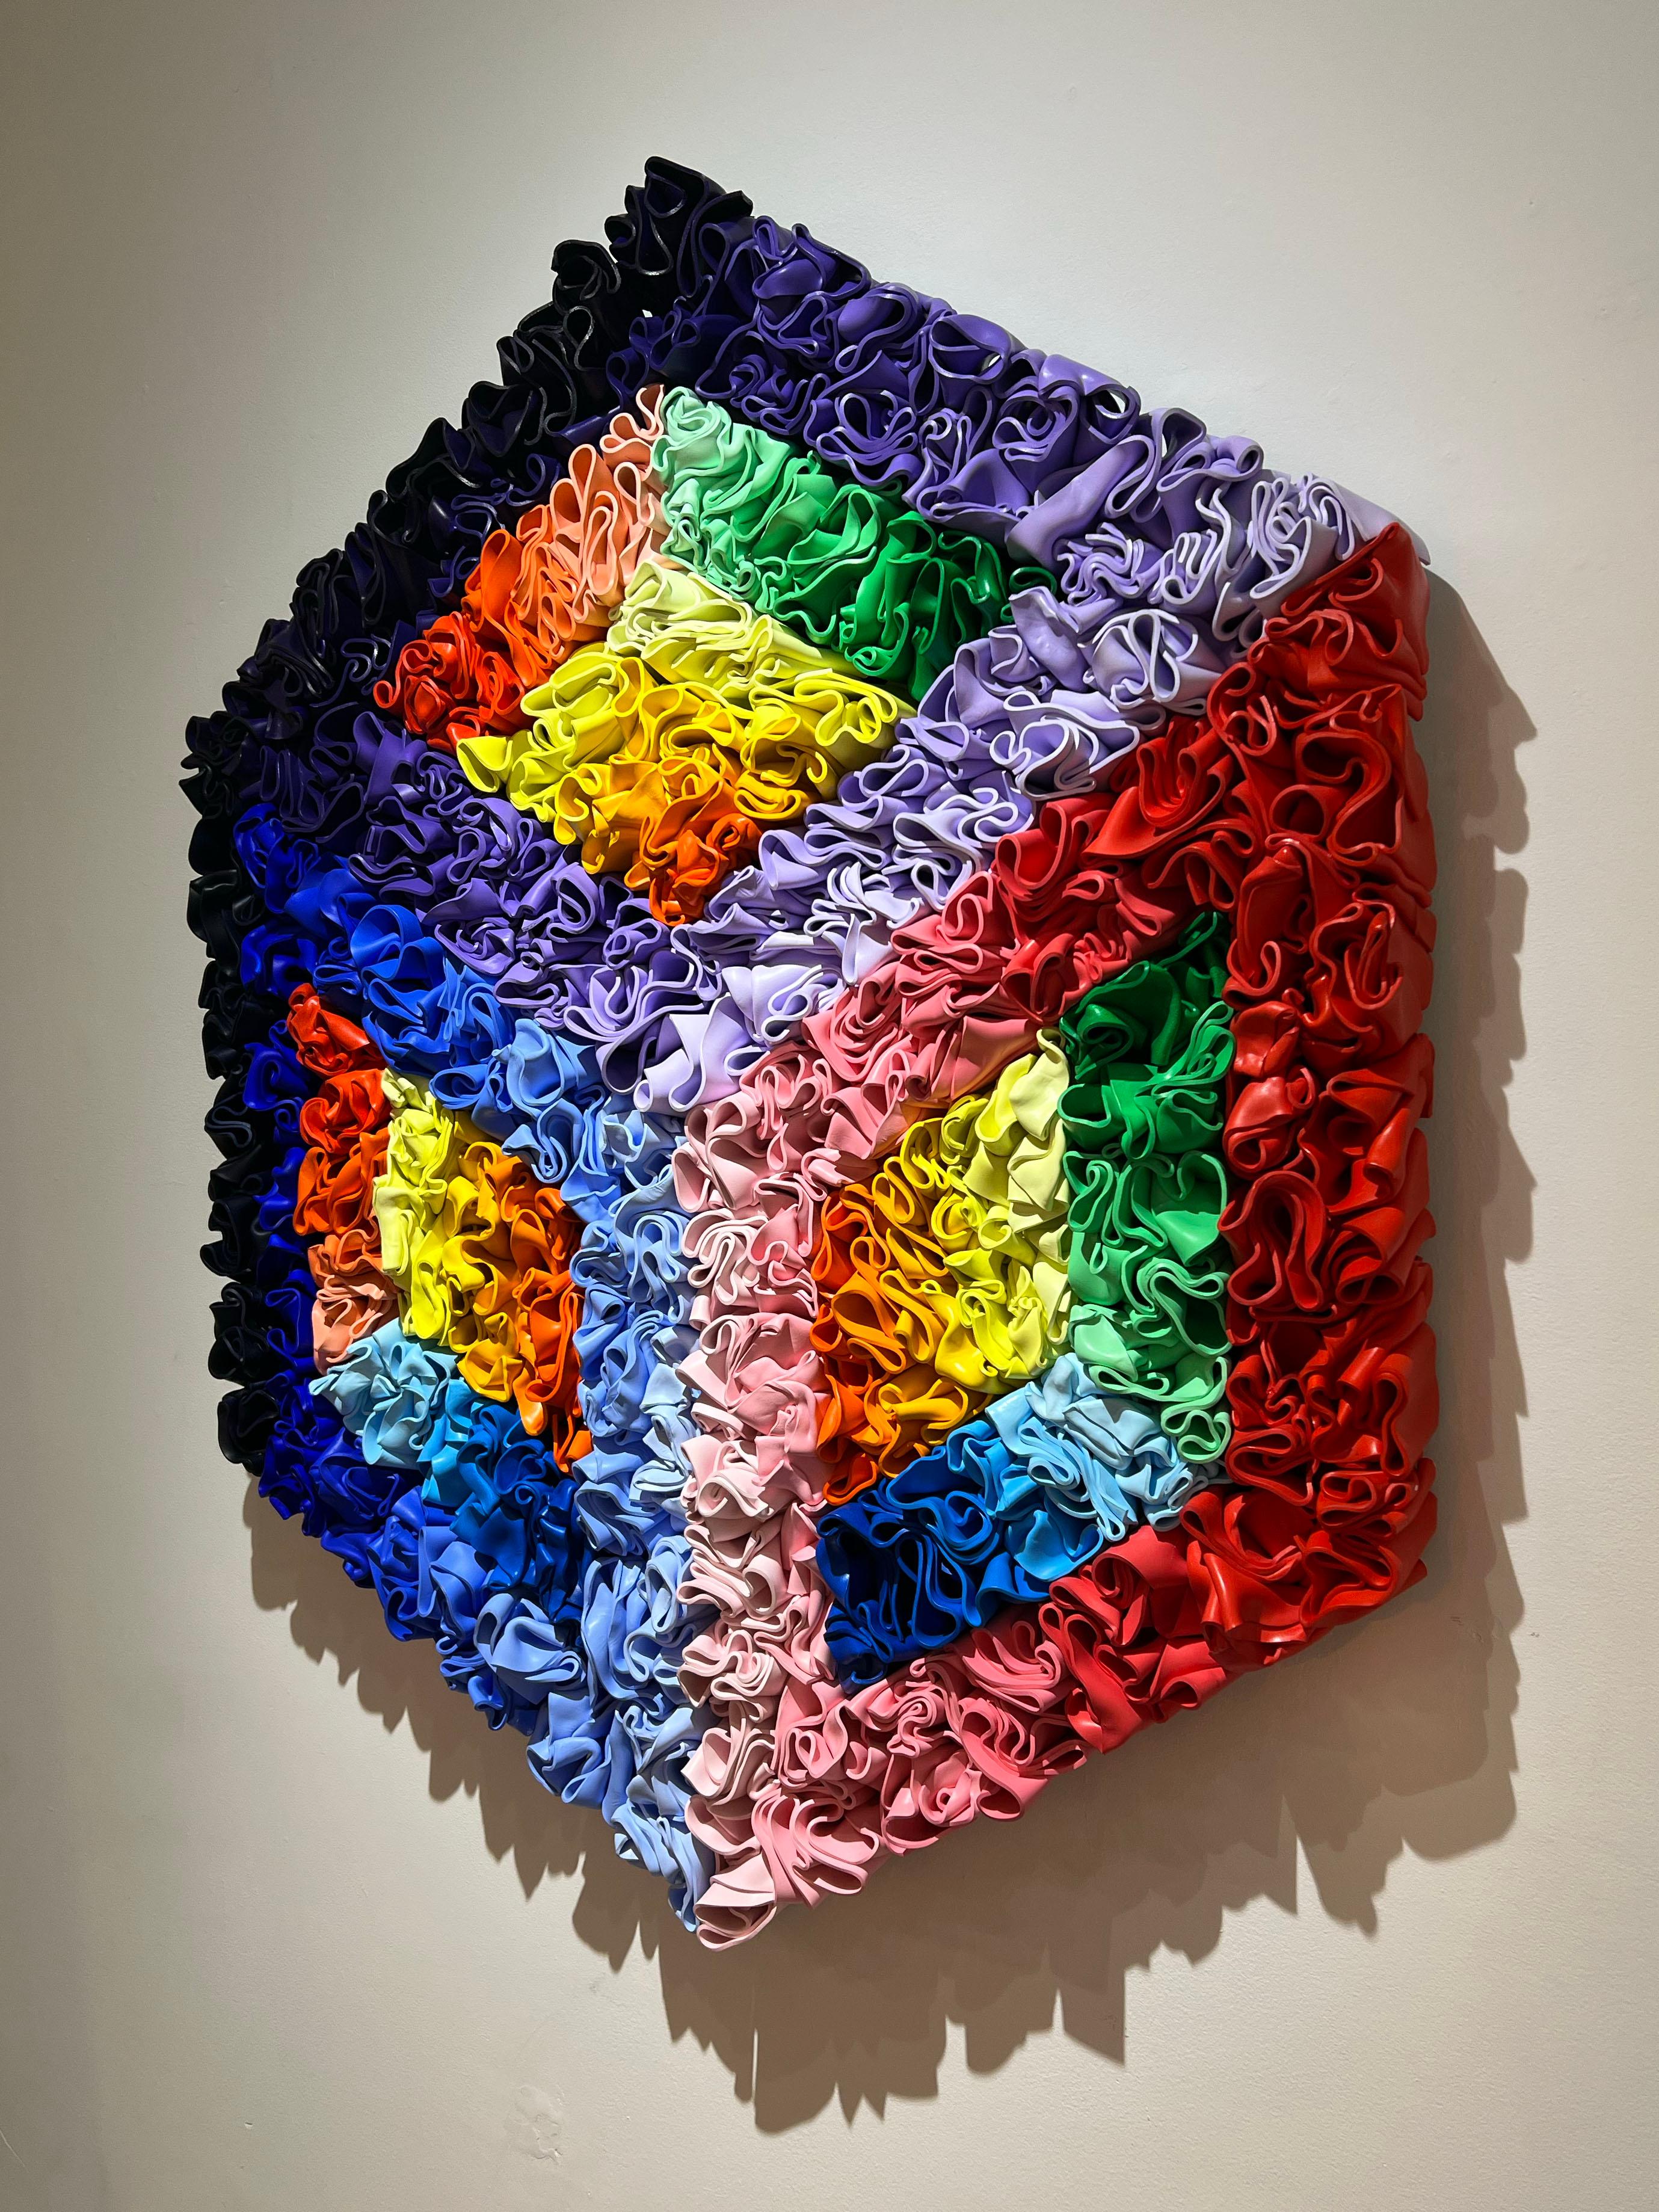 Eine abstrakte Skulptur, handgeformt mit Styrol, die eine kubistische Illusion erzeugt. Dieses Stück hat sehr lebendige Farben, die von Blau- und Lilaabstufungen über Rot und Rosa bis hin zu Orange und Gelb reichen.

Rick Lazes ist ein